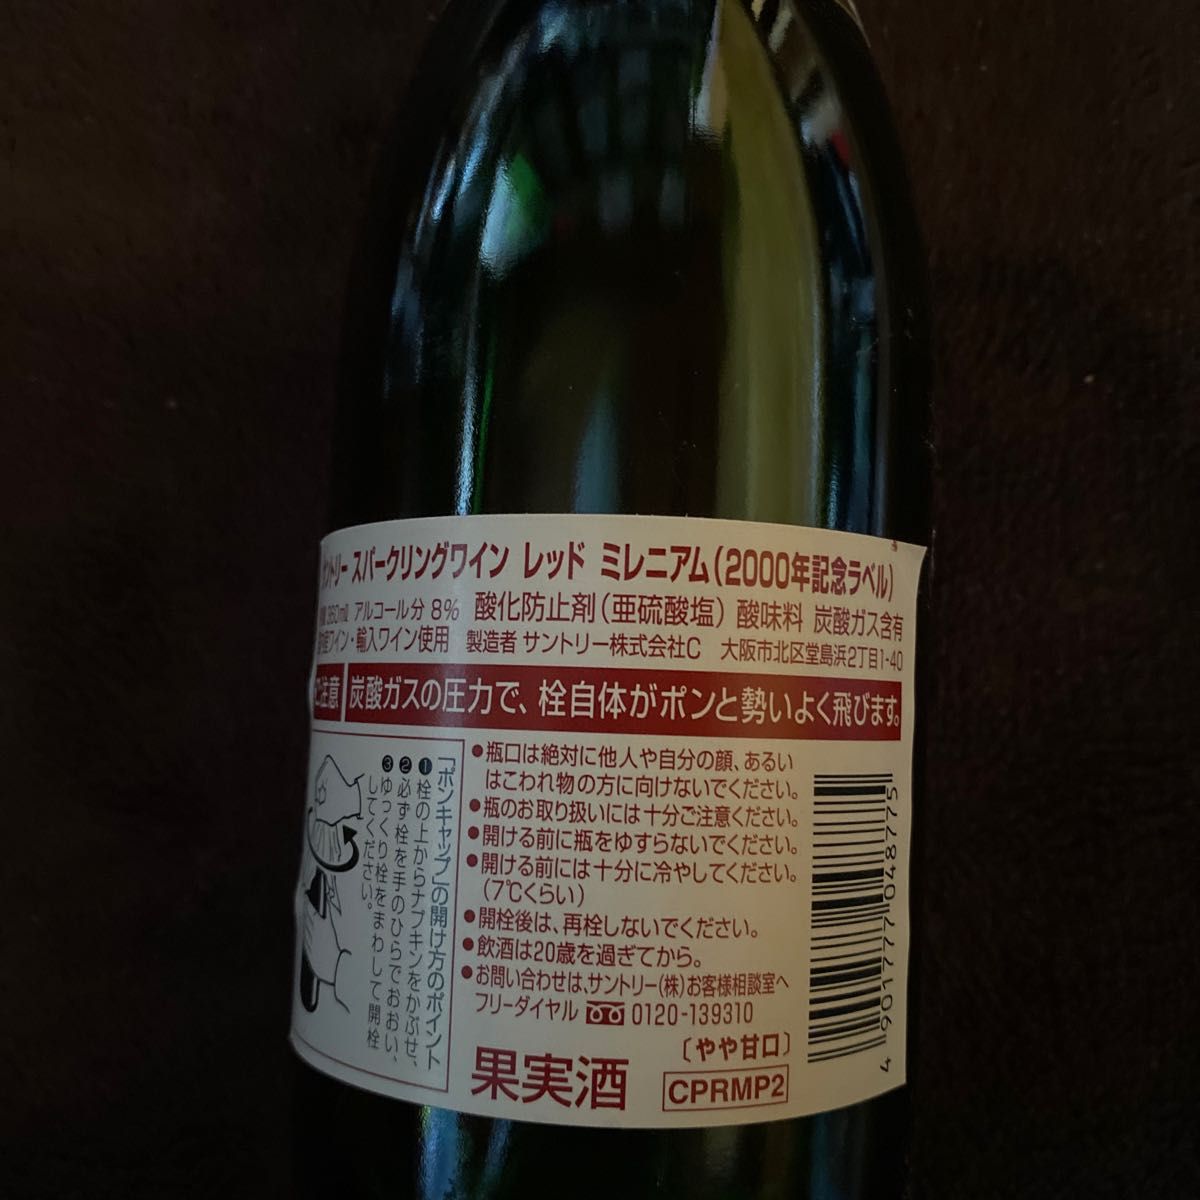 サントリースパークリングワインミレニアム360ml